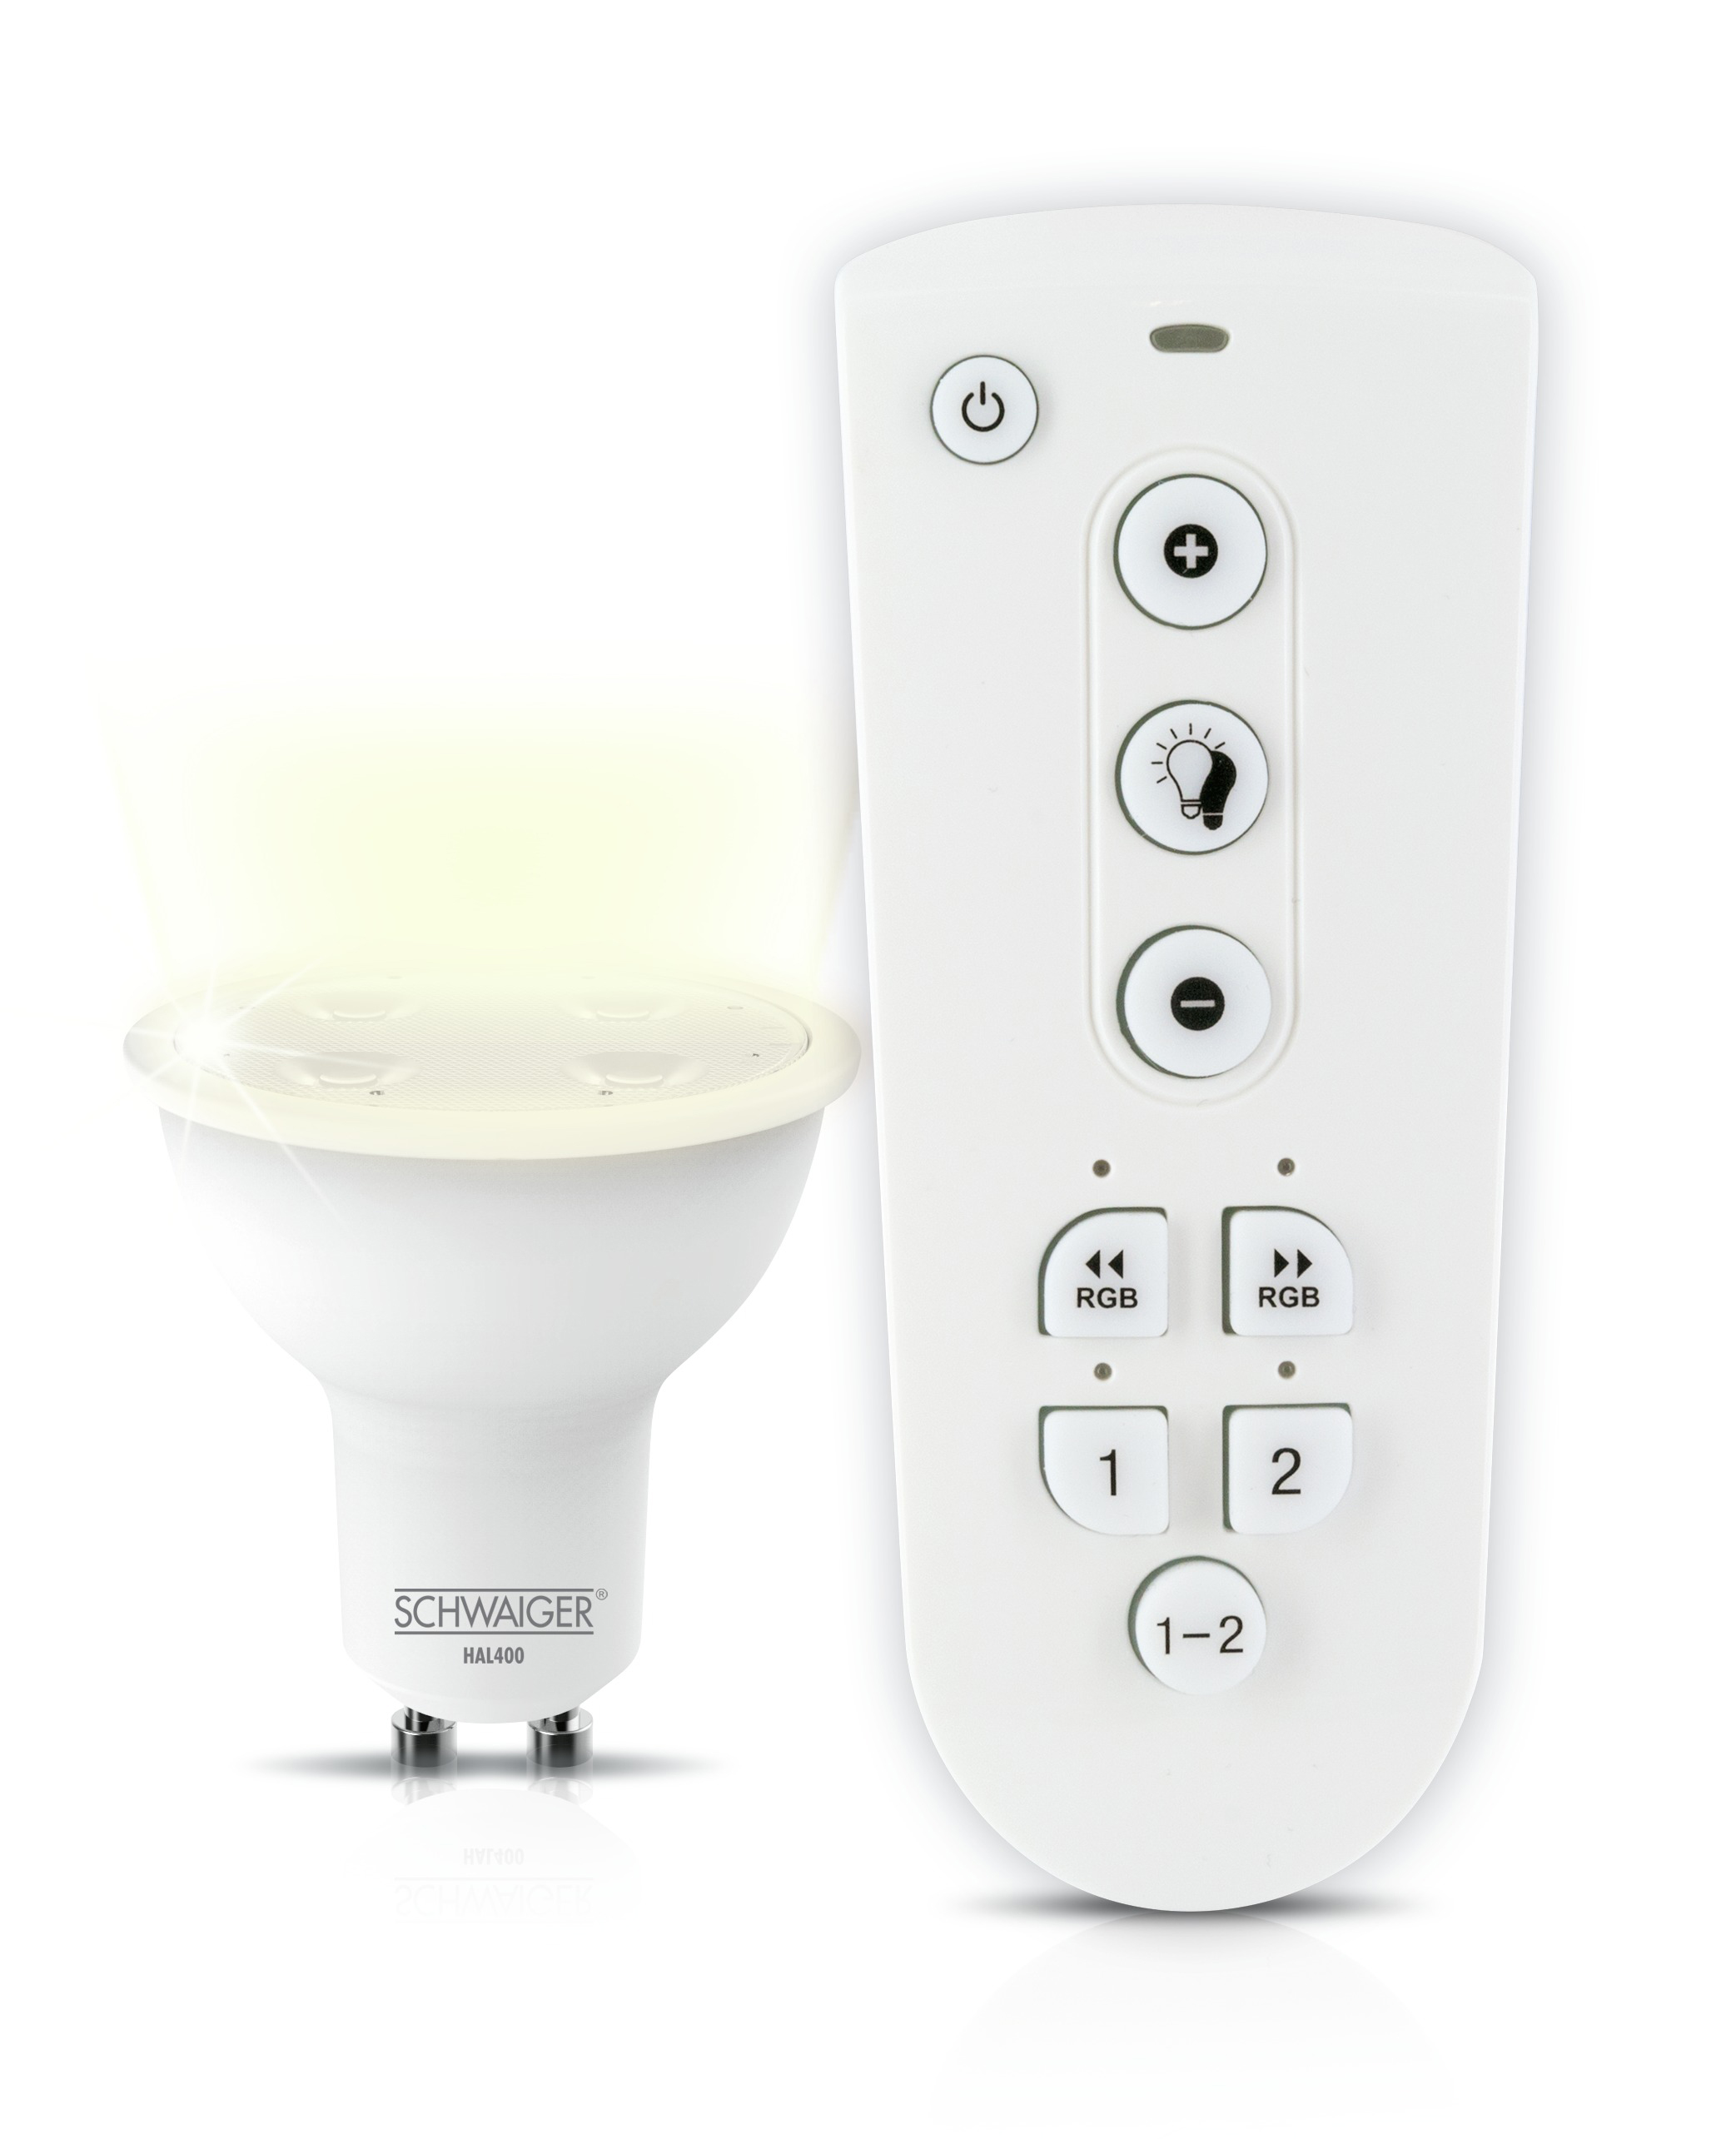 SCHWAIGER -HALSET400- LED Leuchtmittel Set als Warmweiß dimmbares Wohnlicht (GU10)